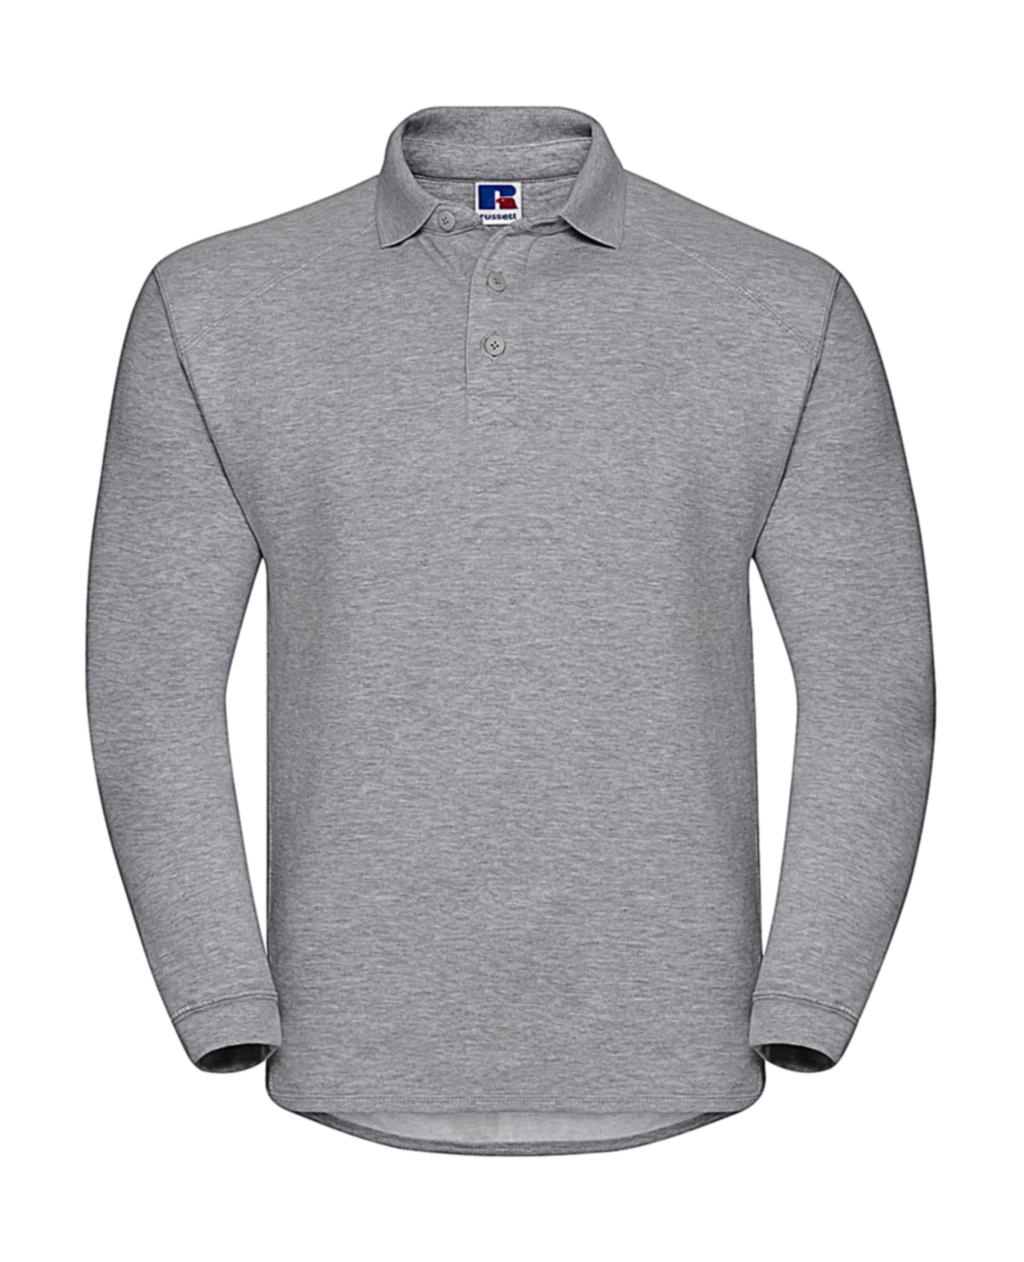 Heavy Duty Collar Sweatshirt zum Besticken und Bedrucken in der Farbe Light Oxford mit Ihren Logo, Schriftzug oder Motiv.